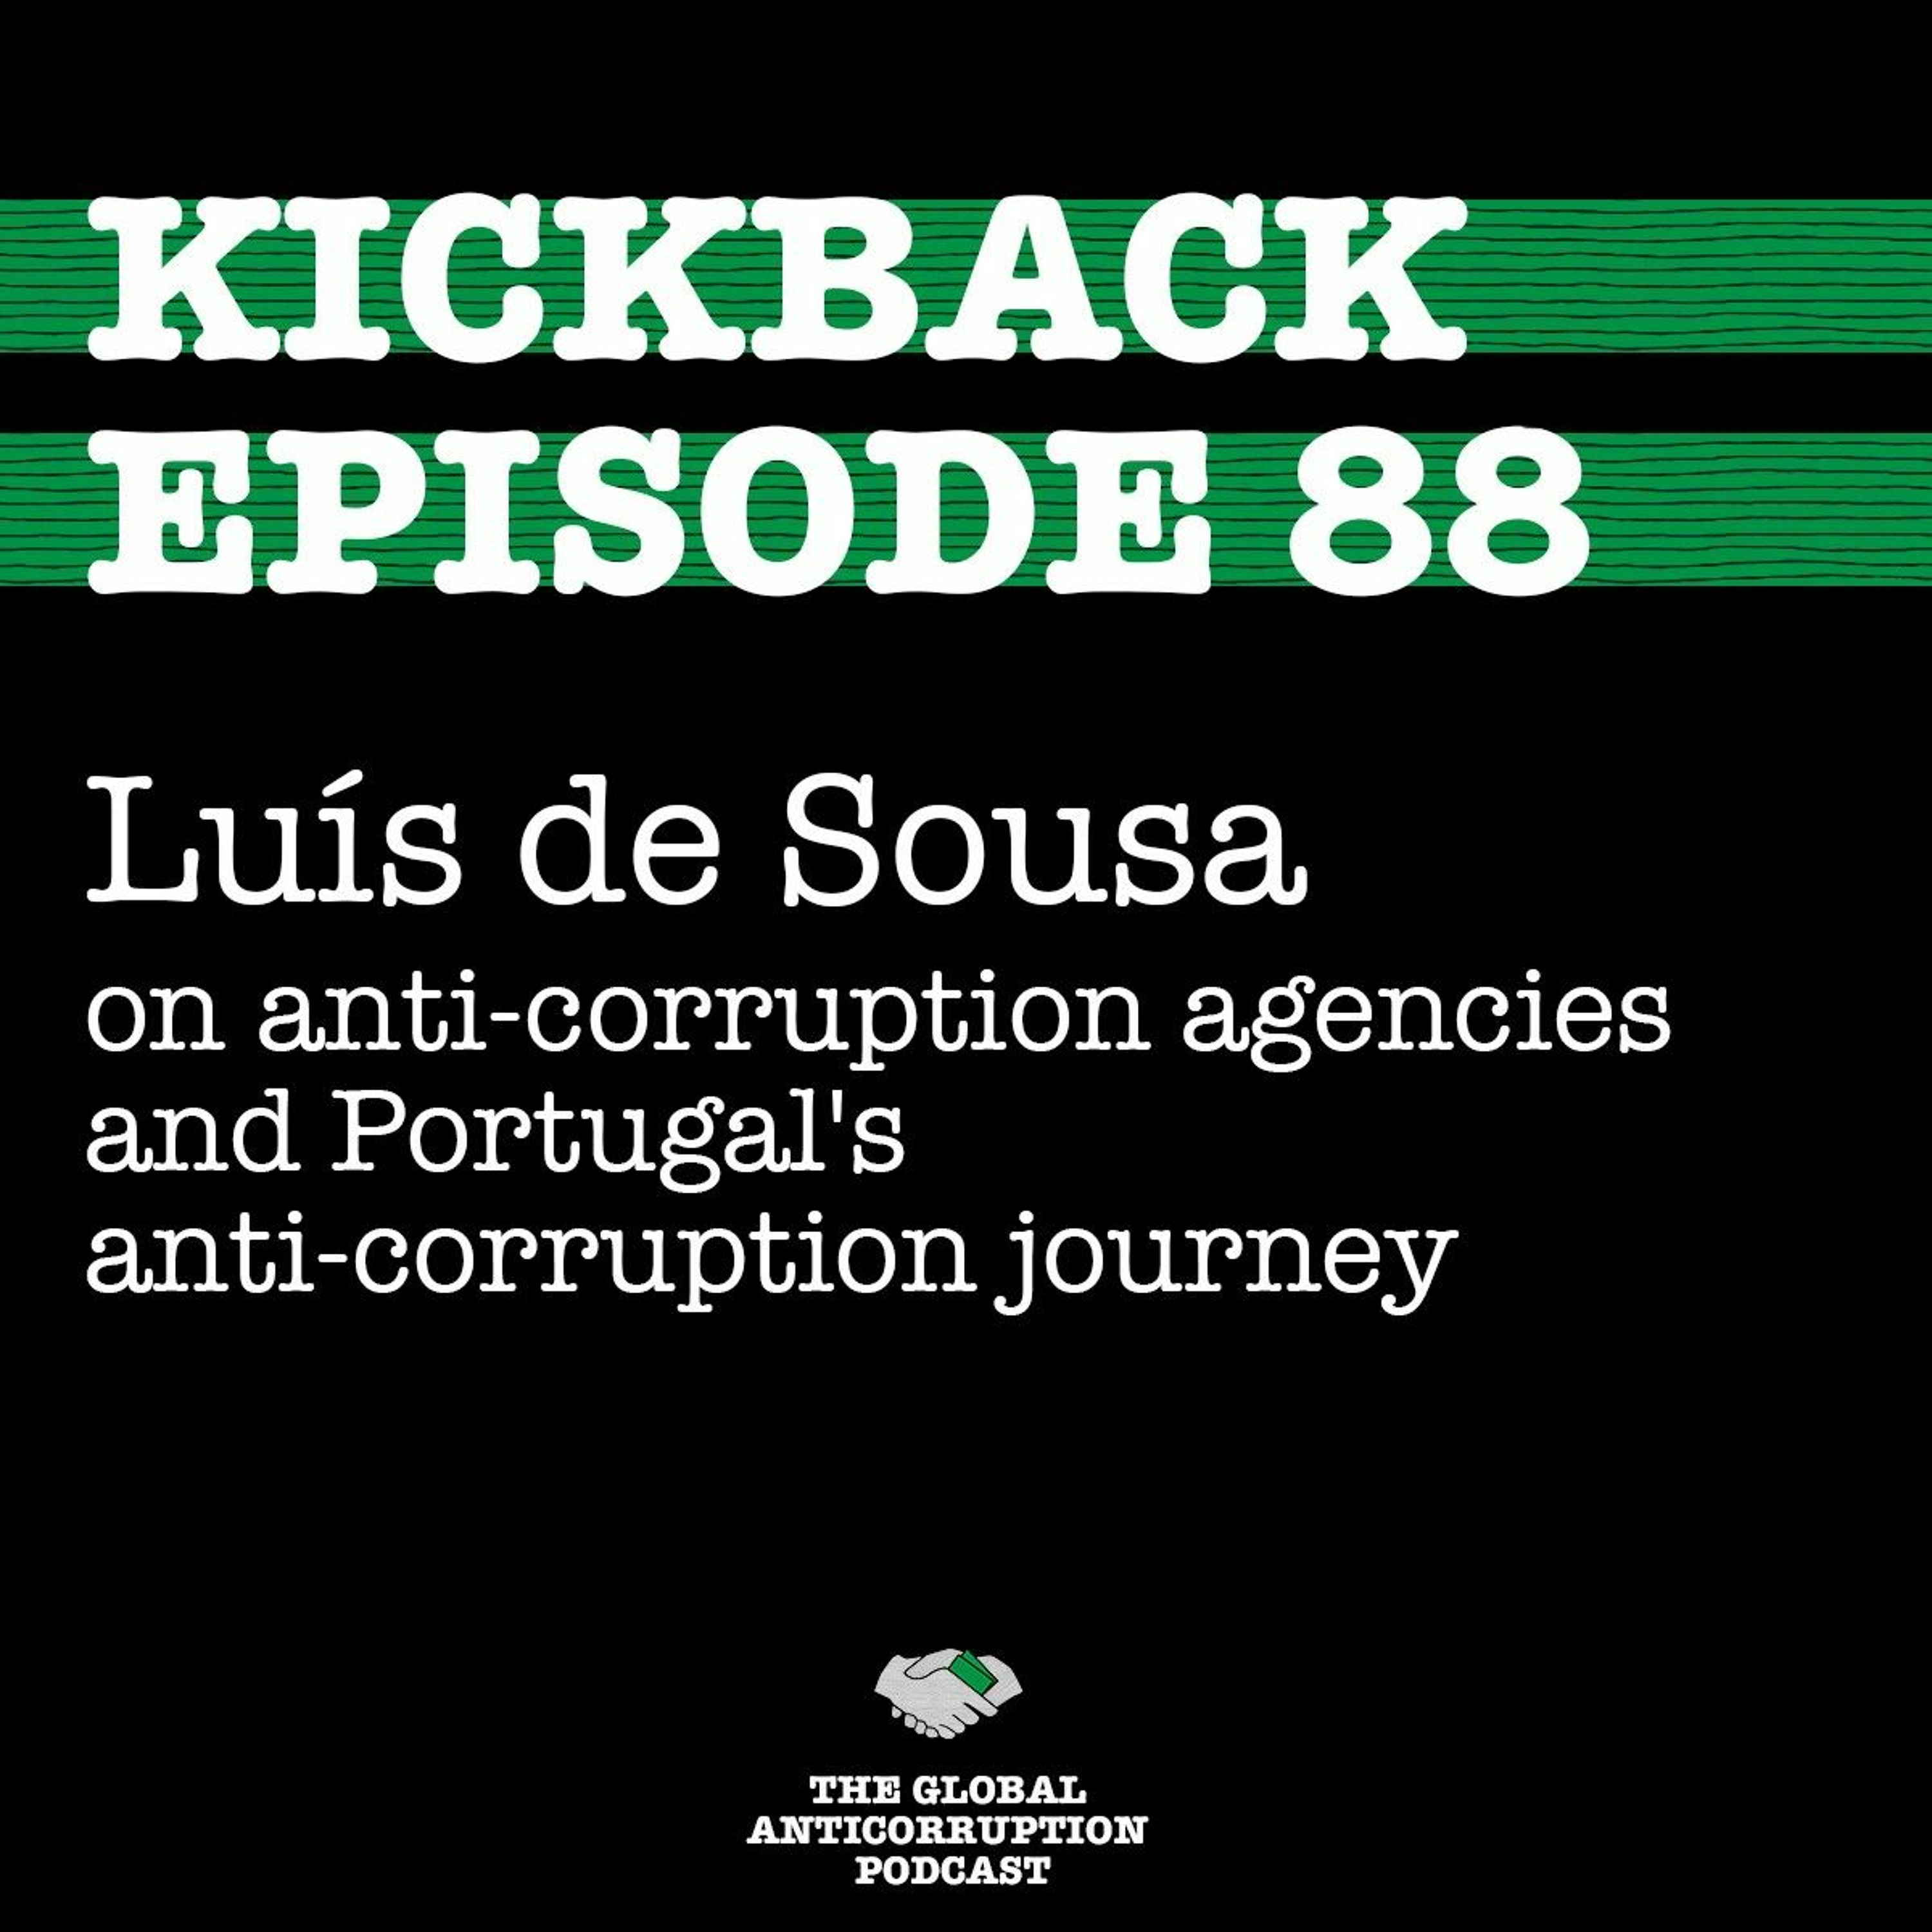 88. Luís de Sousa on anti-corruption agencies and Portugal's anti-corruption journey